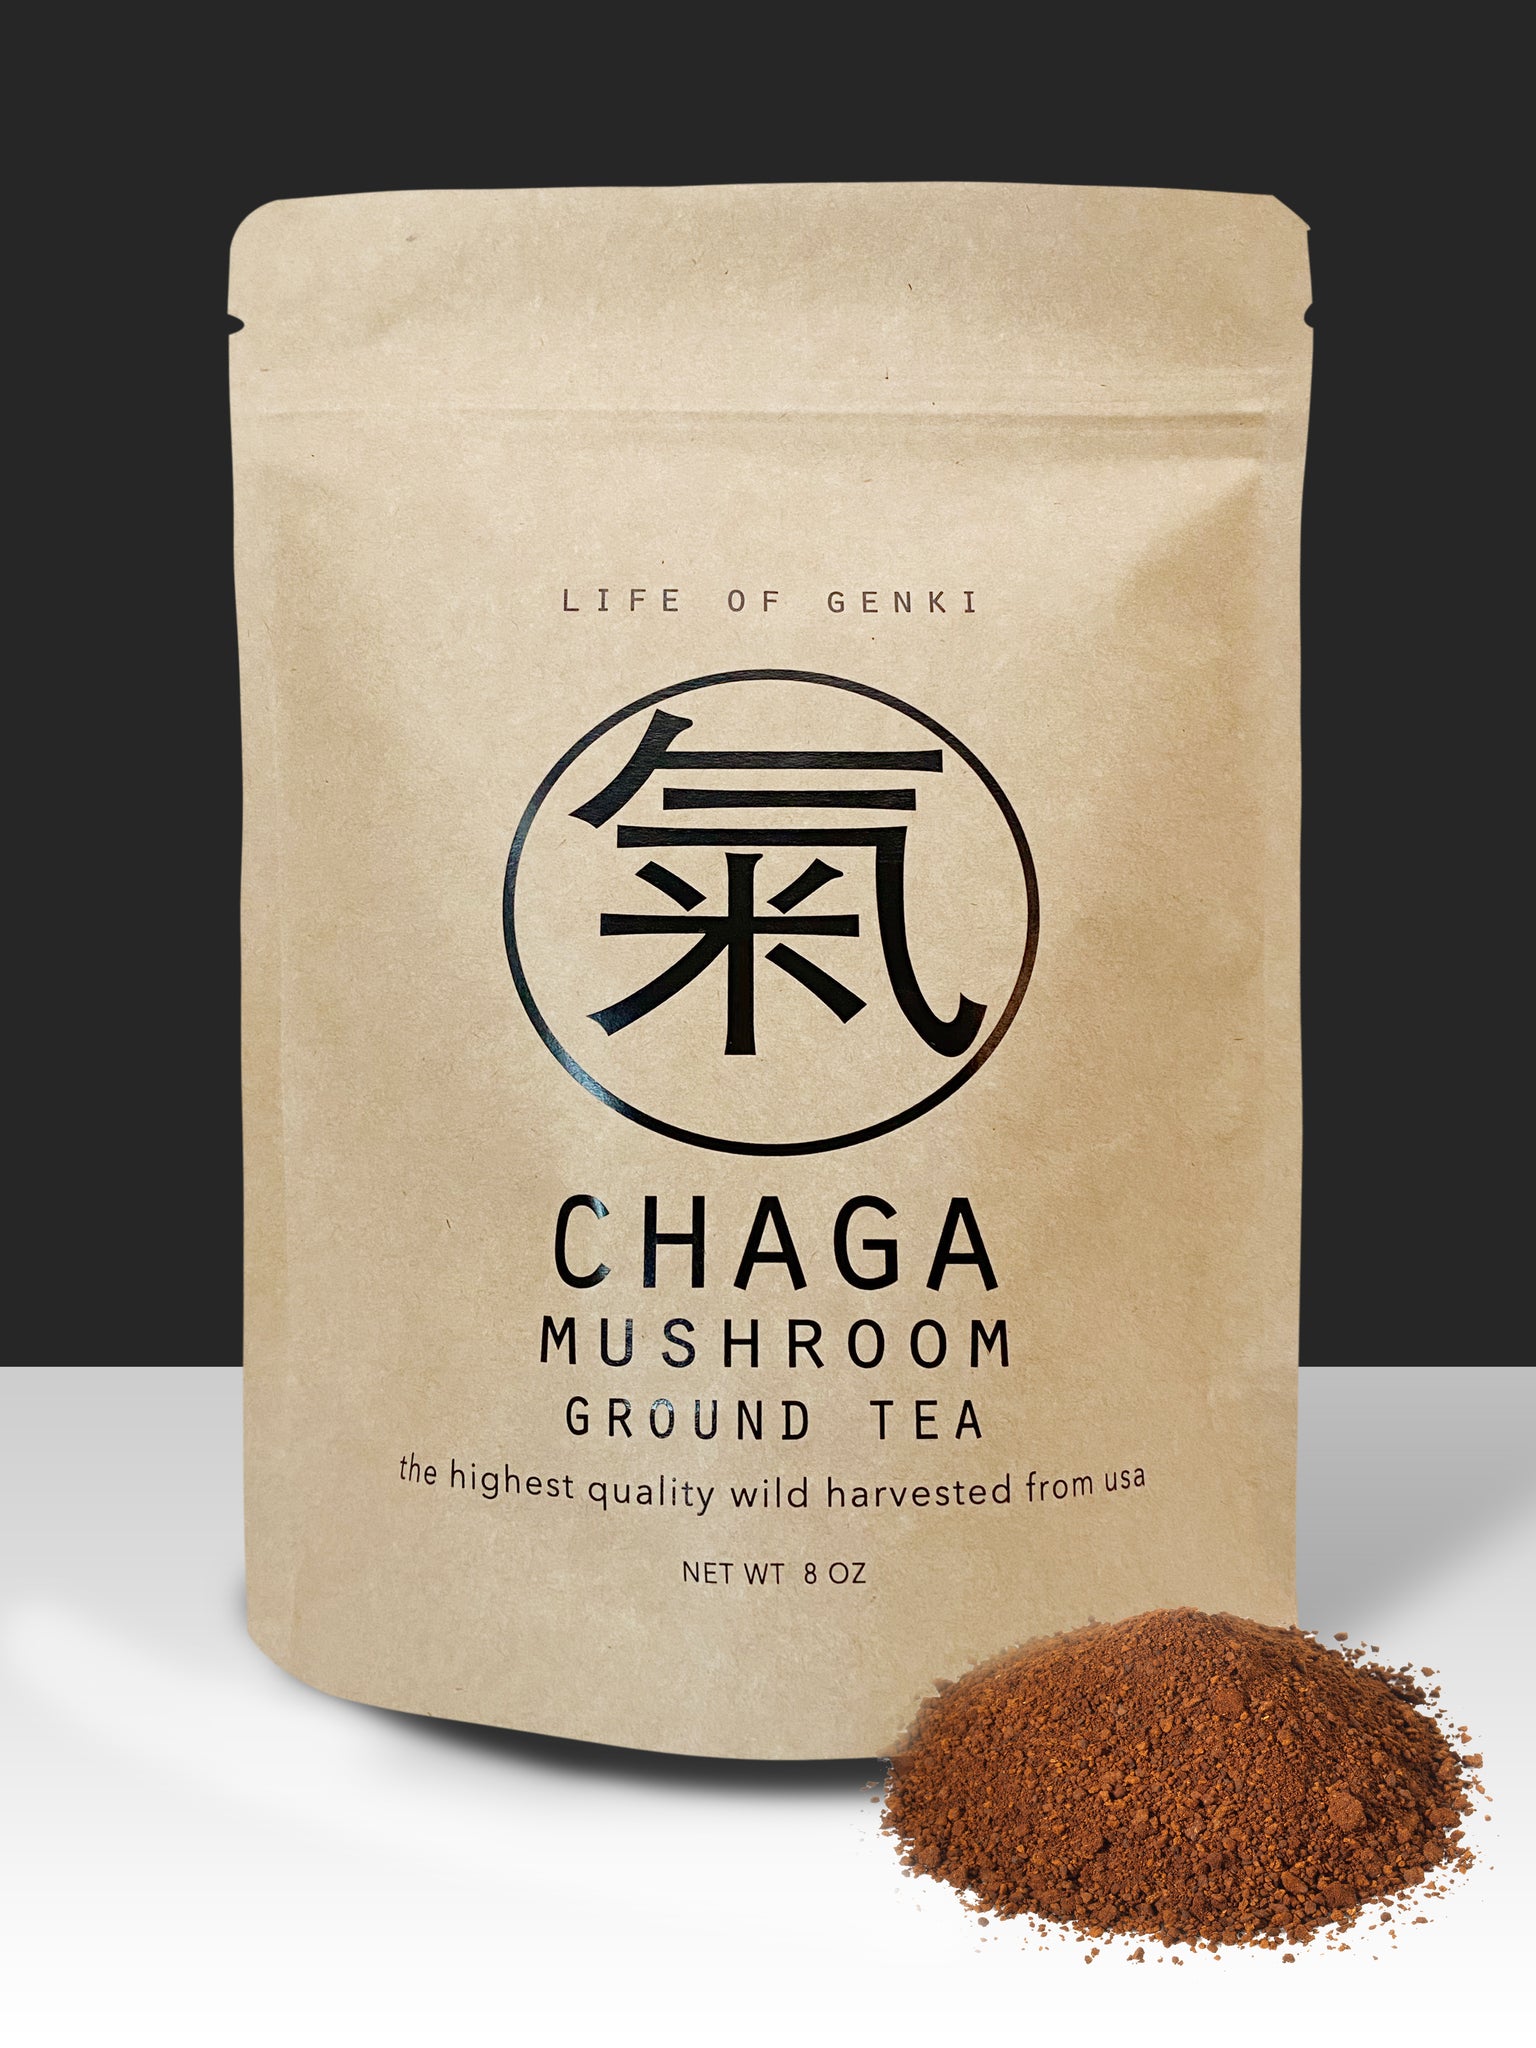 8 oz Chaga Mushroom ground tea